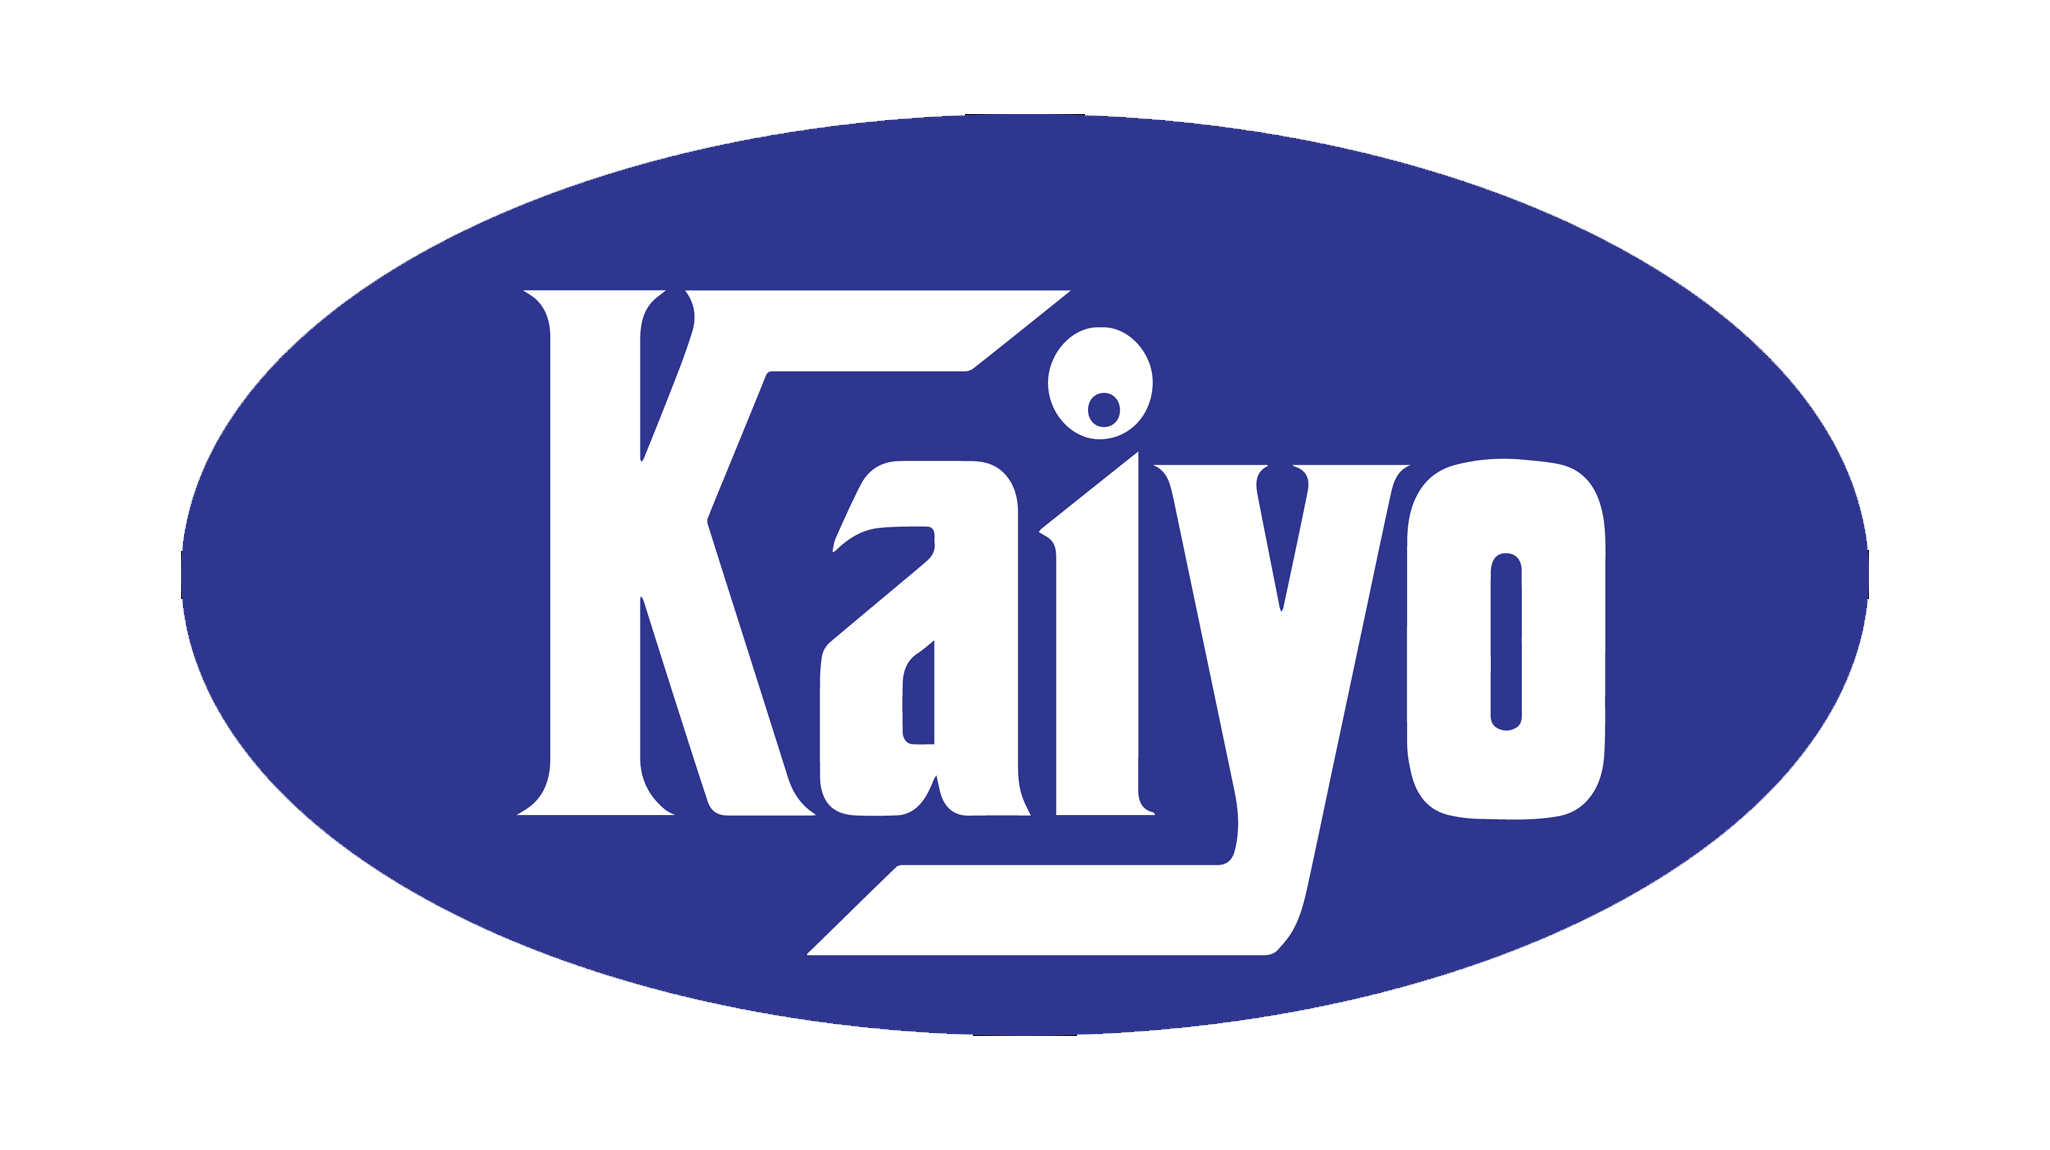 kaiyo